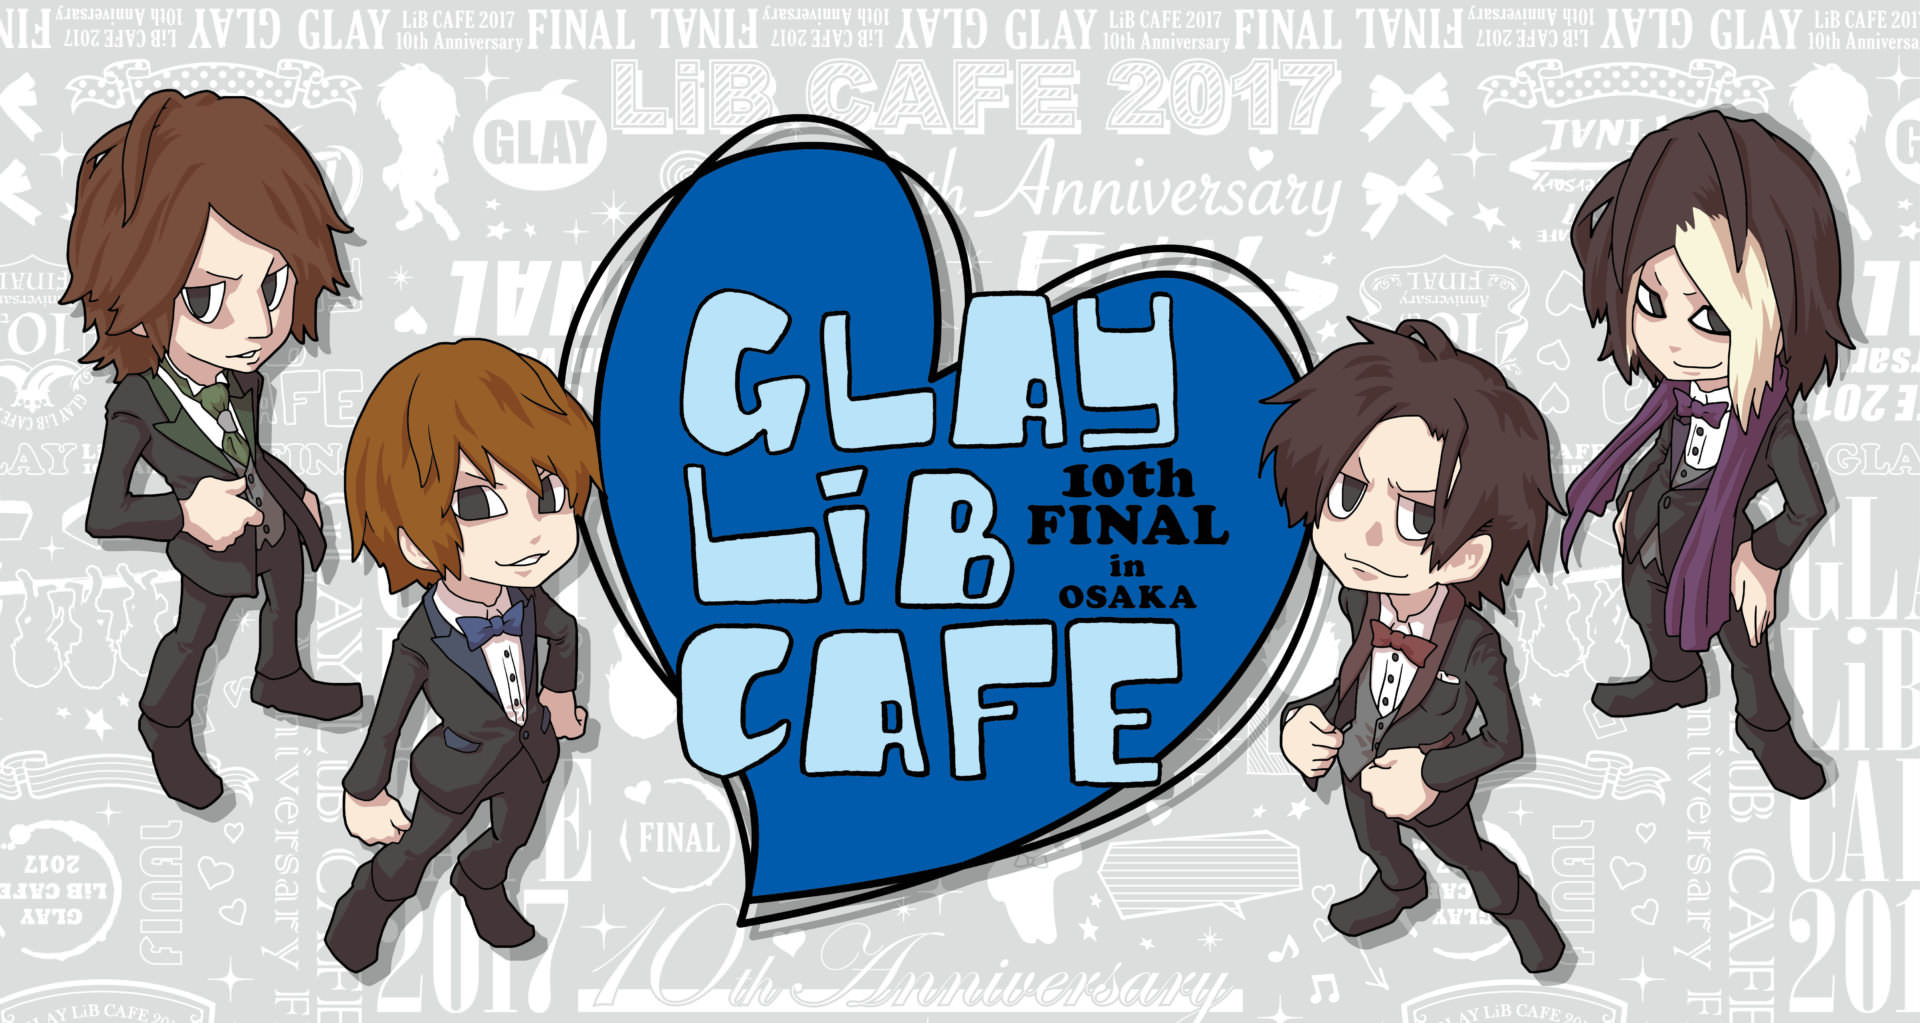 10周年記念ファイナル Glay Lib Cafe 9 13 を皮切りに全国開催